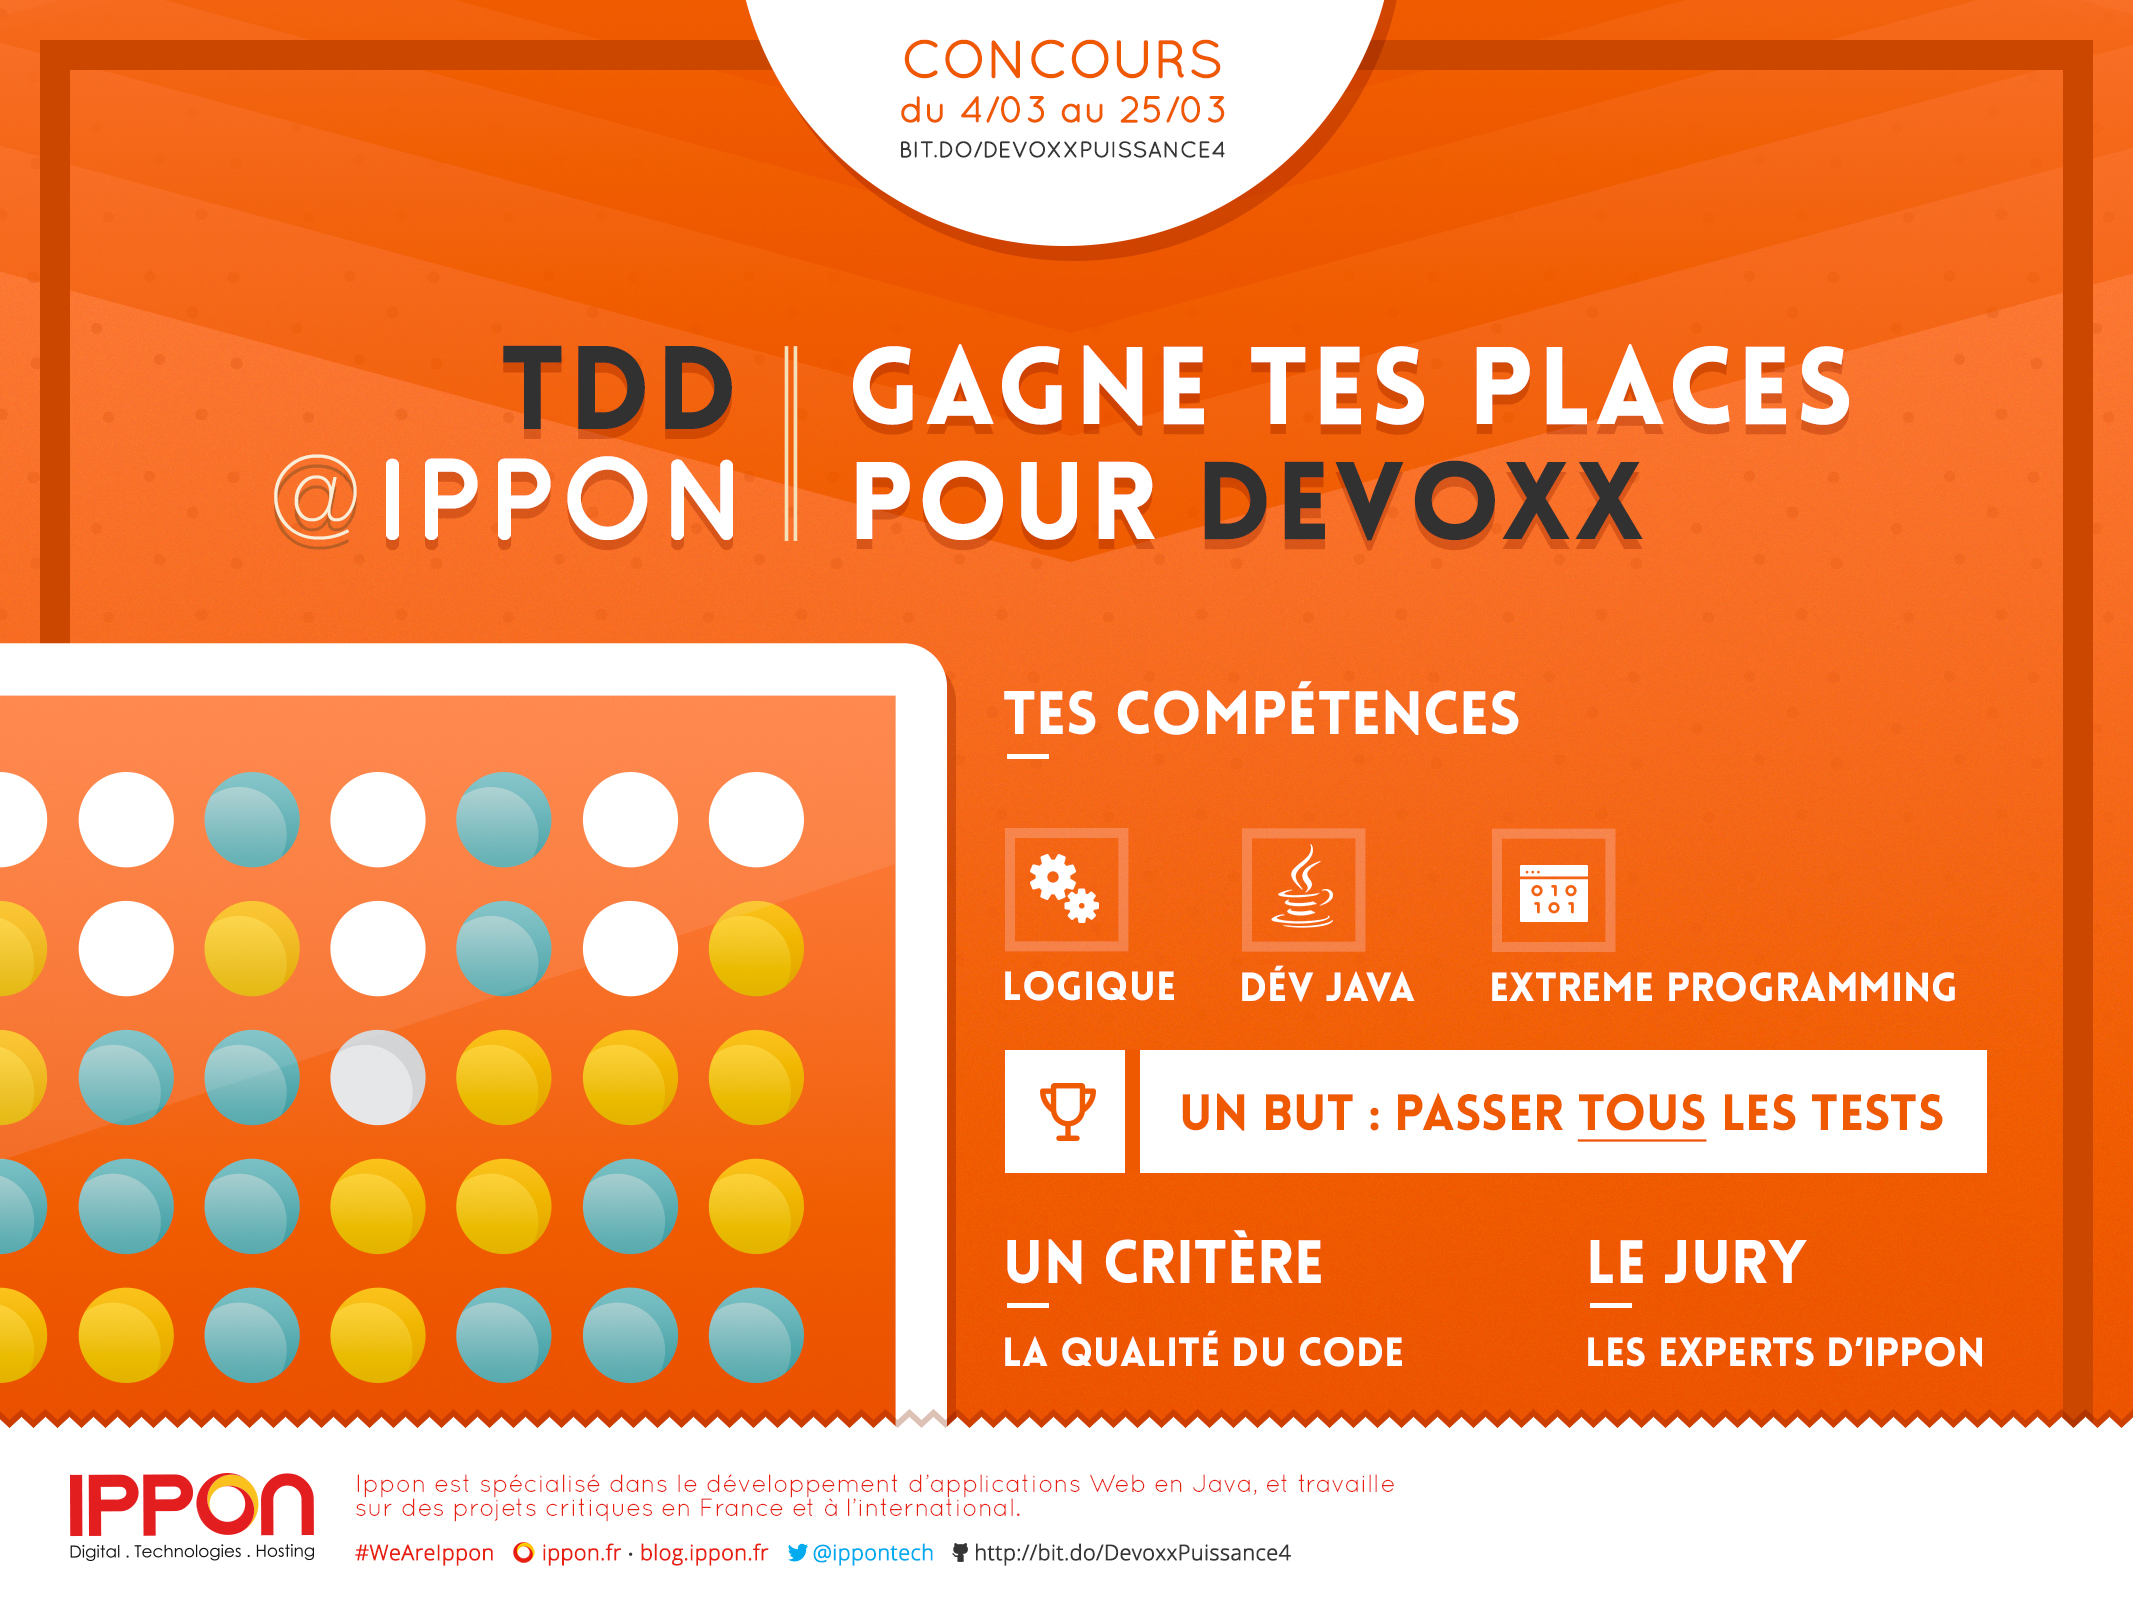 Gagnez une place pour Devoxx France 2015 !